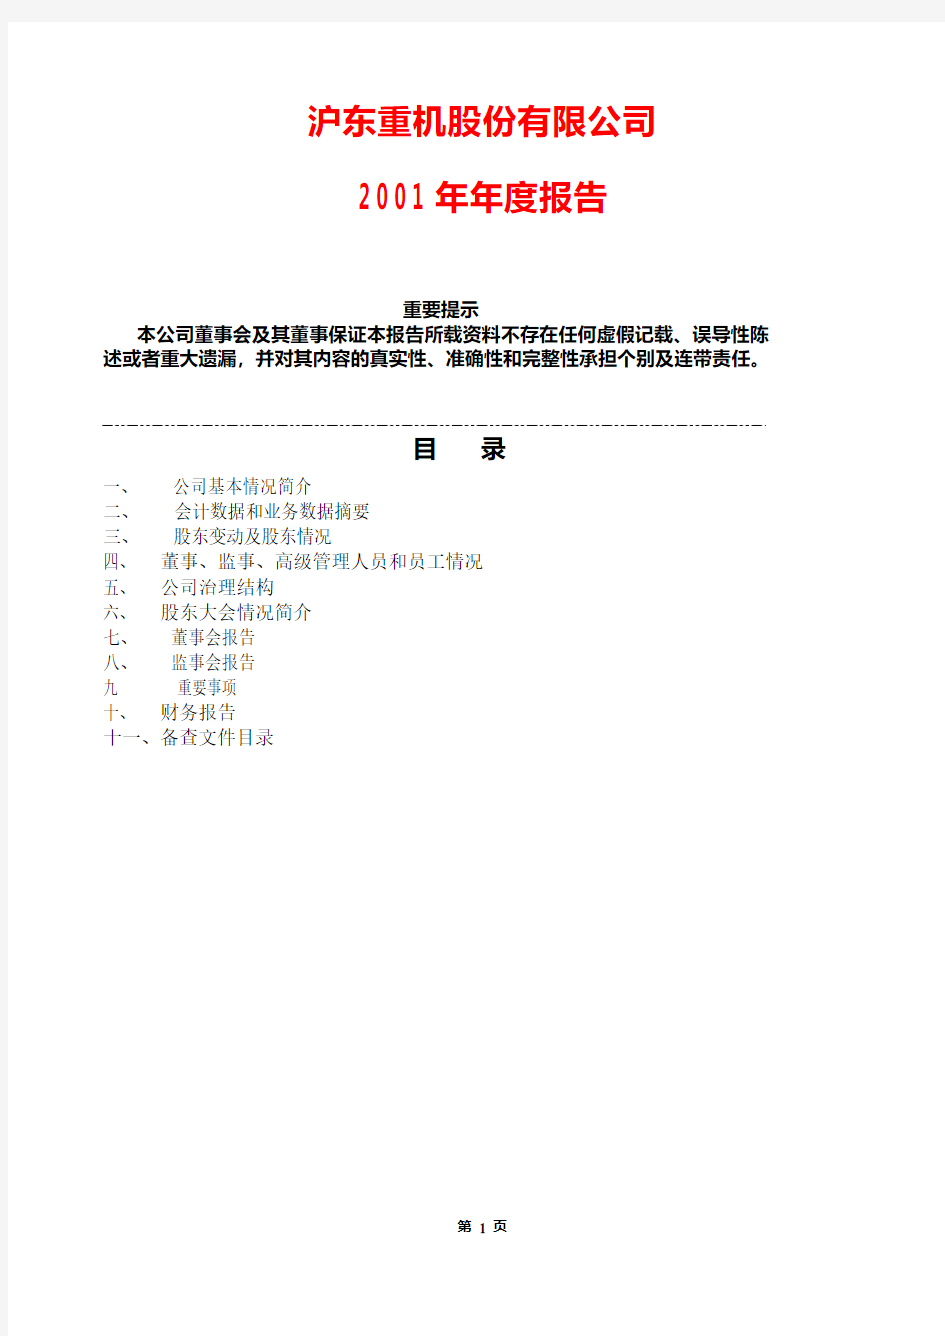 沪东重机股份有限公司 2001 年年度报告